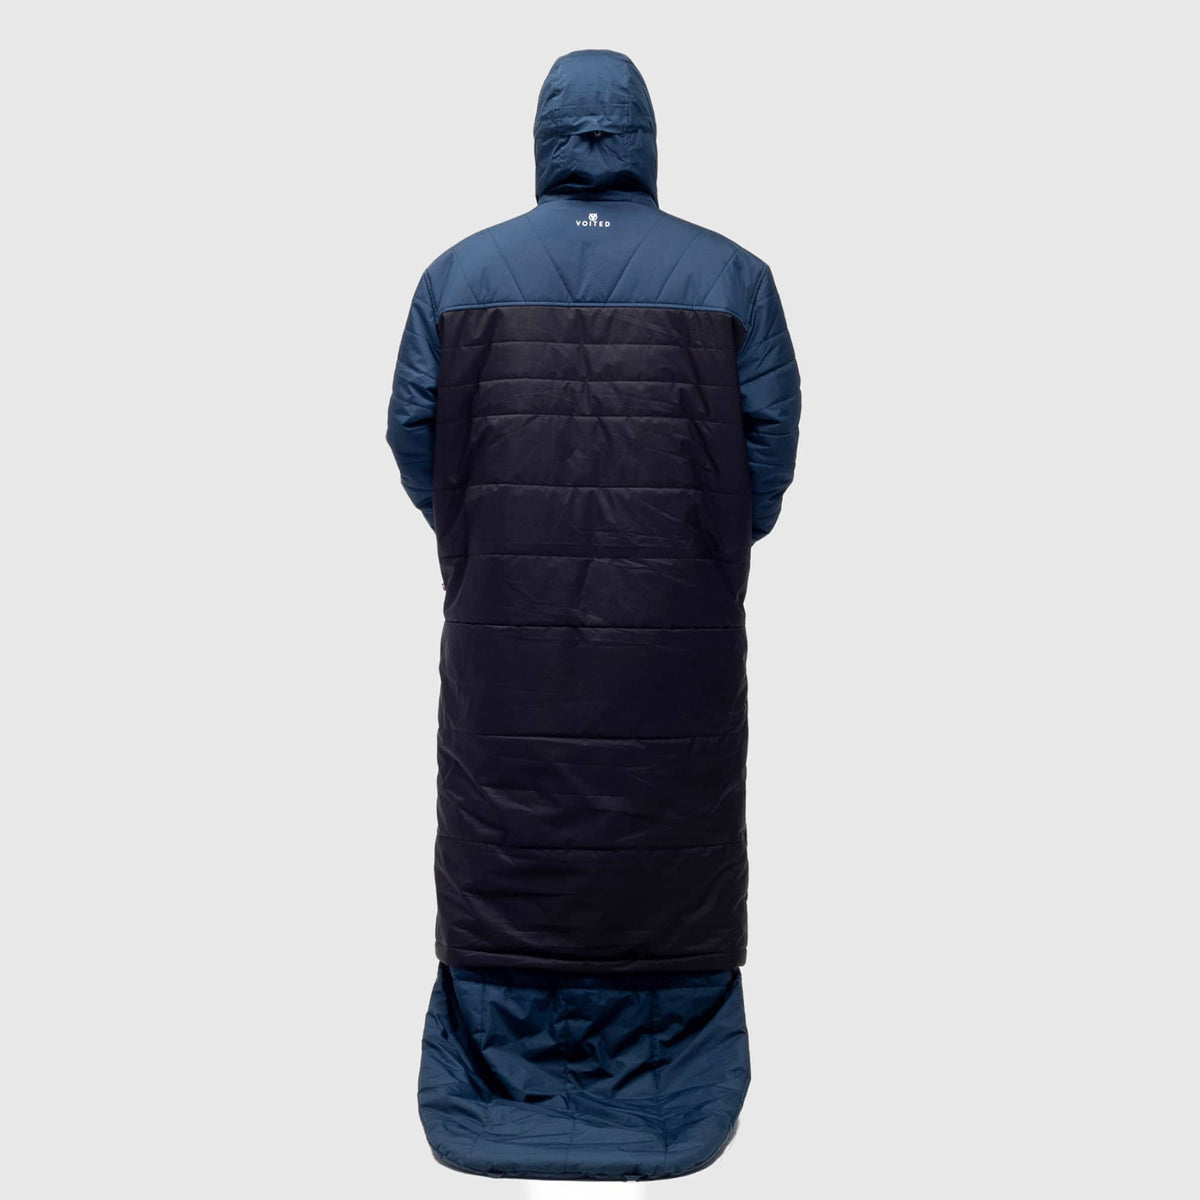 VOITED Premium Slumber Jacket for Camping, Vanlife & Indoor - Navy / Black / Navy